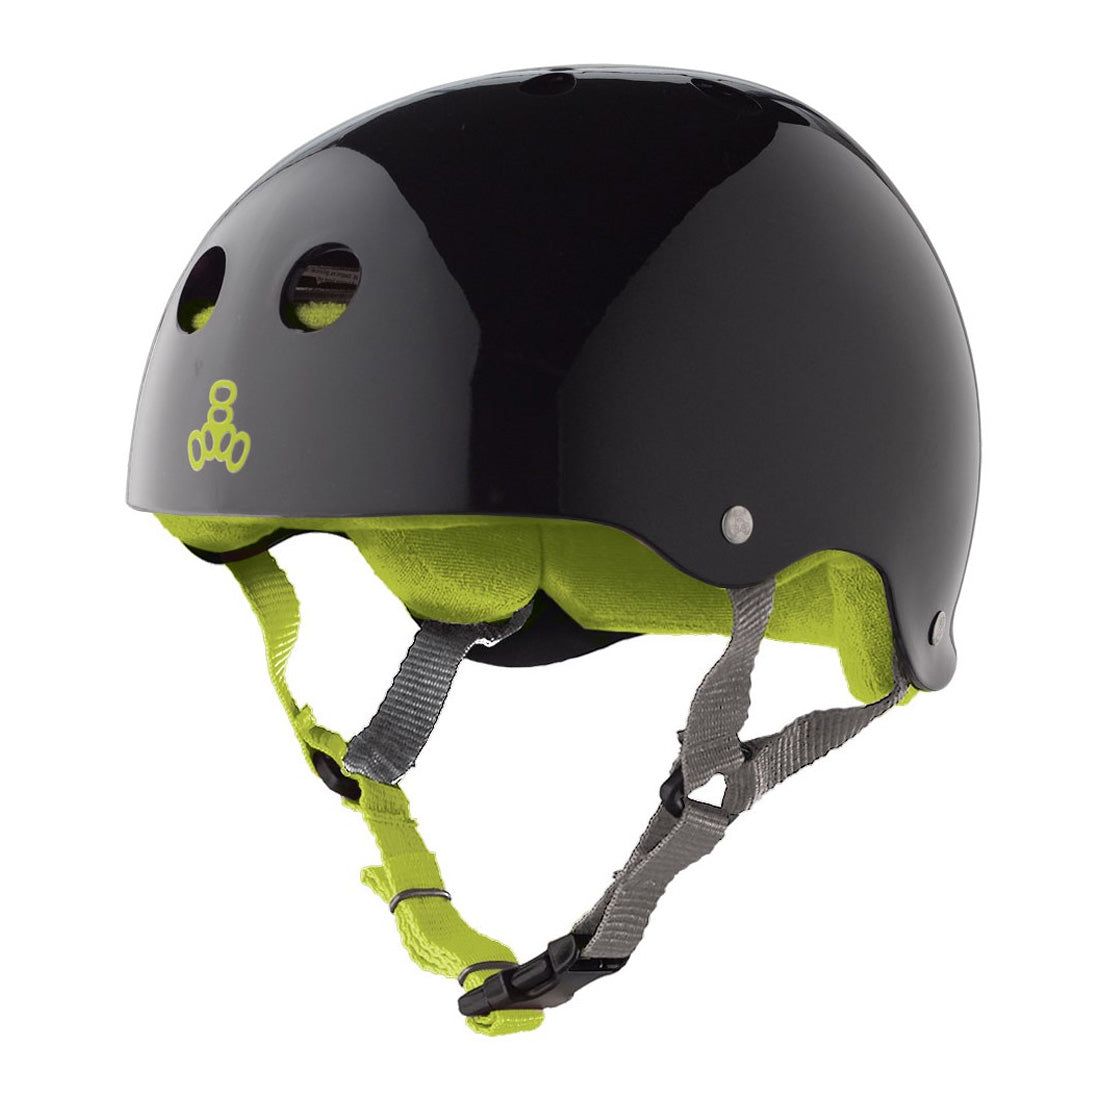 Triple 8 Skate SS Helmet - Black/Lime Gloss Helmets